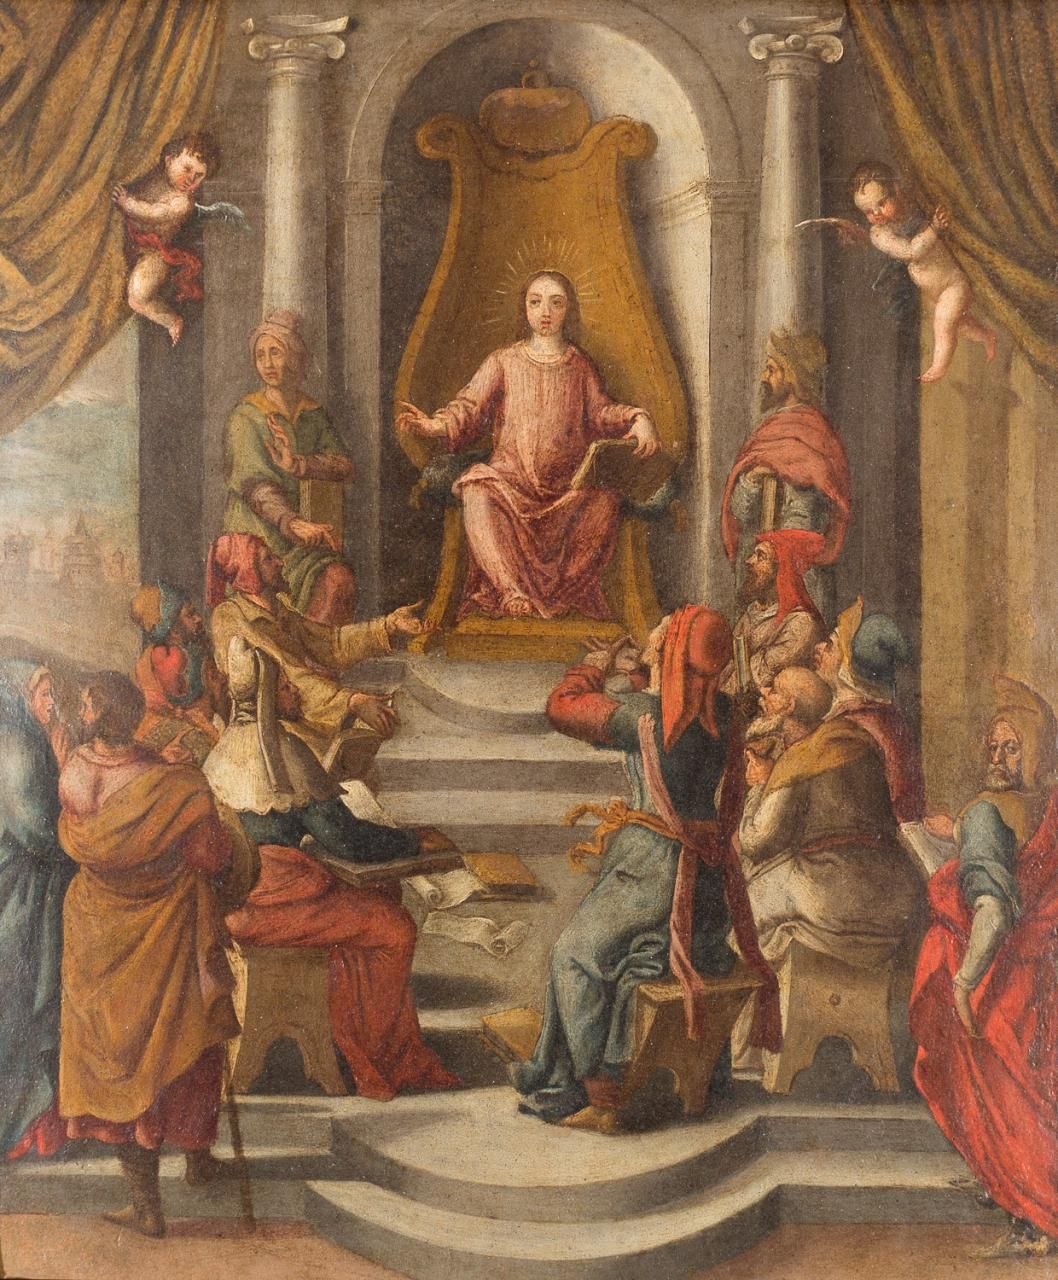 ESCUELA FLAMENCA, S. XVII Jesus unter den Ärzten
Öl auf Kupfer
38 x 32 cm